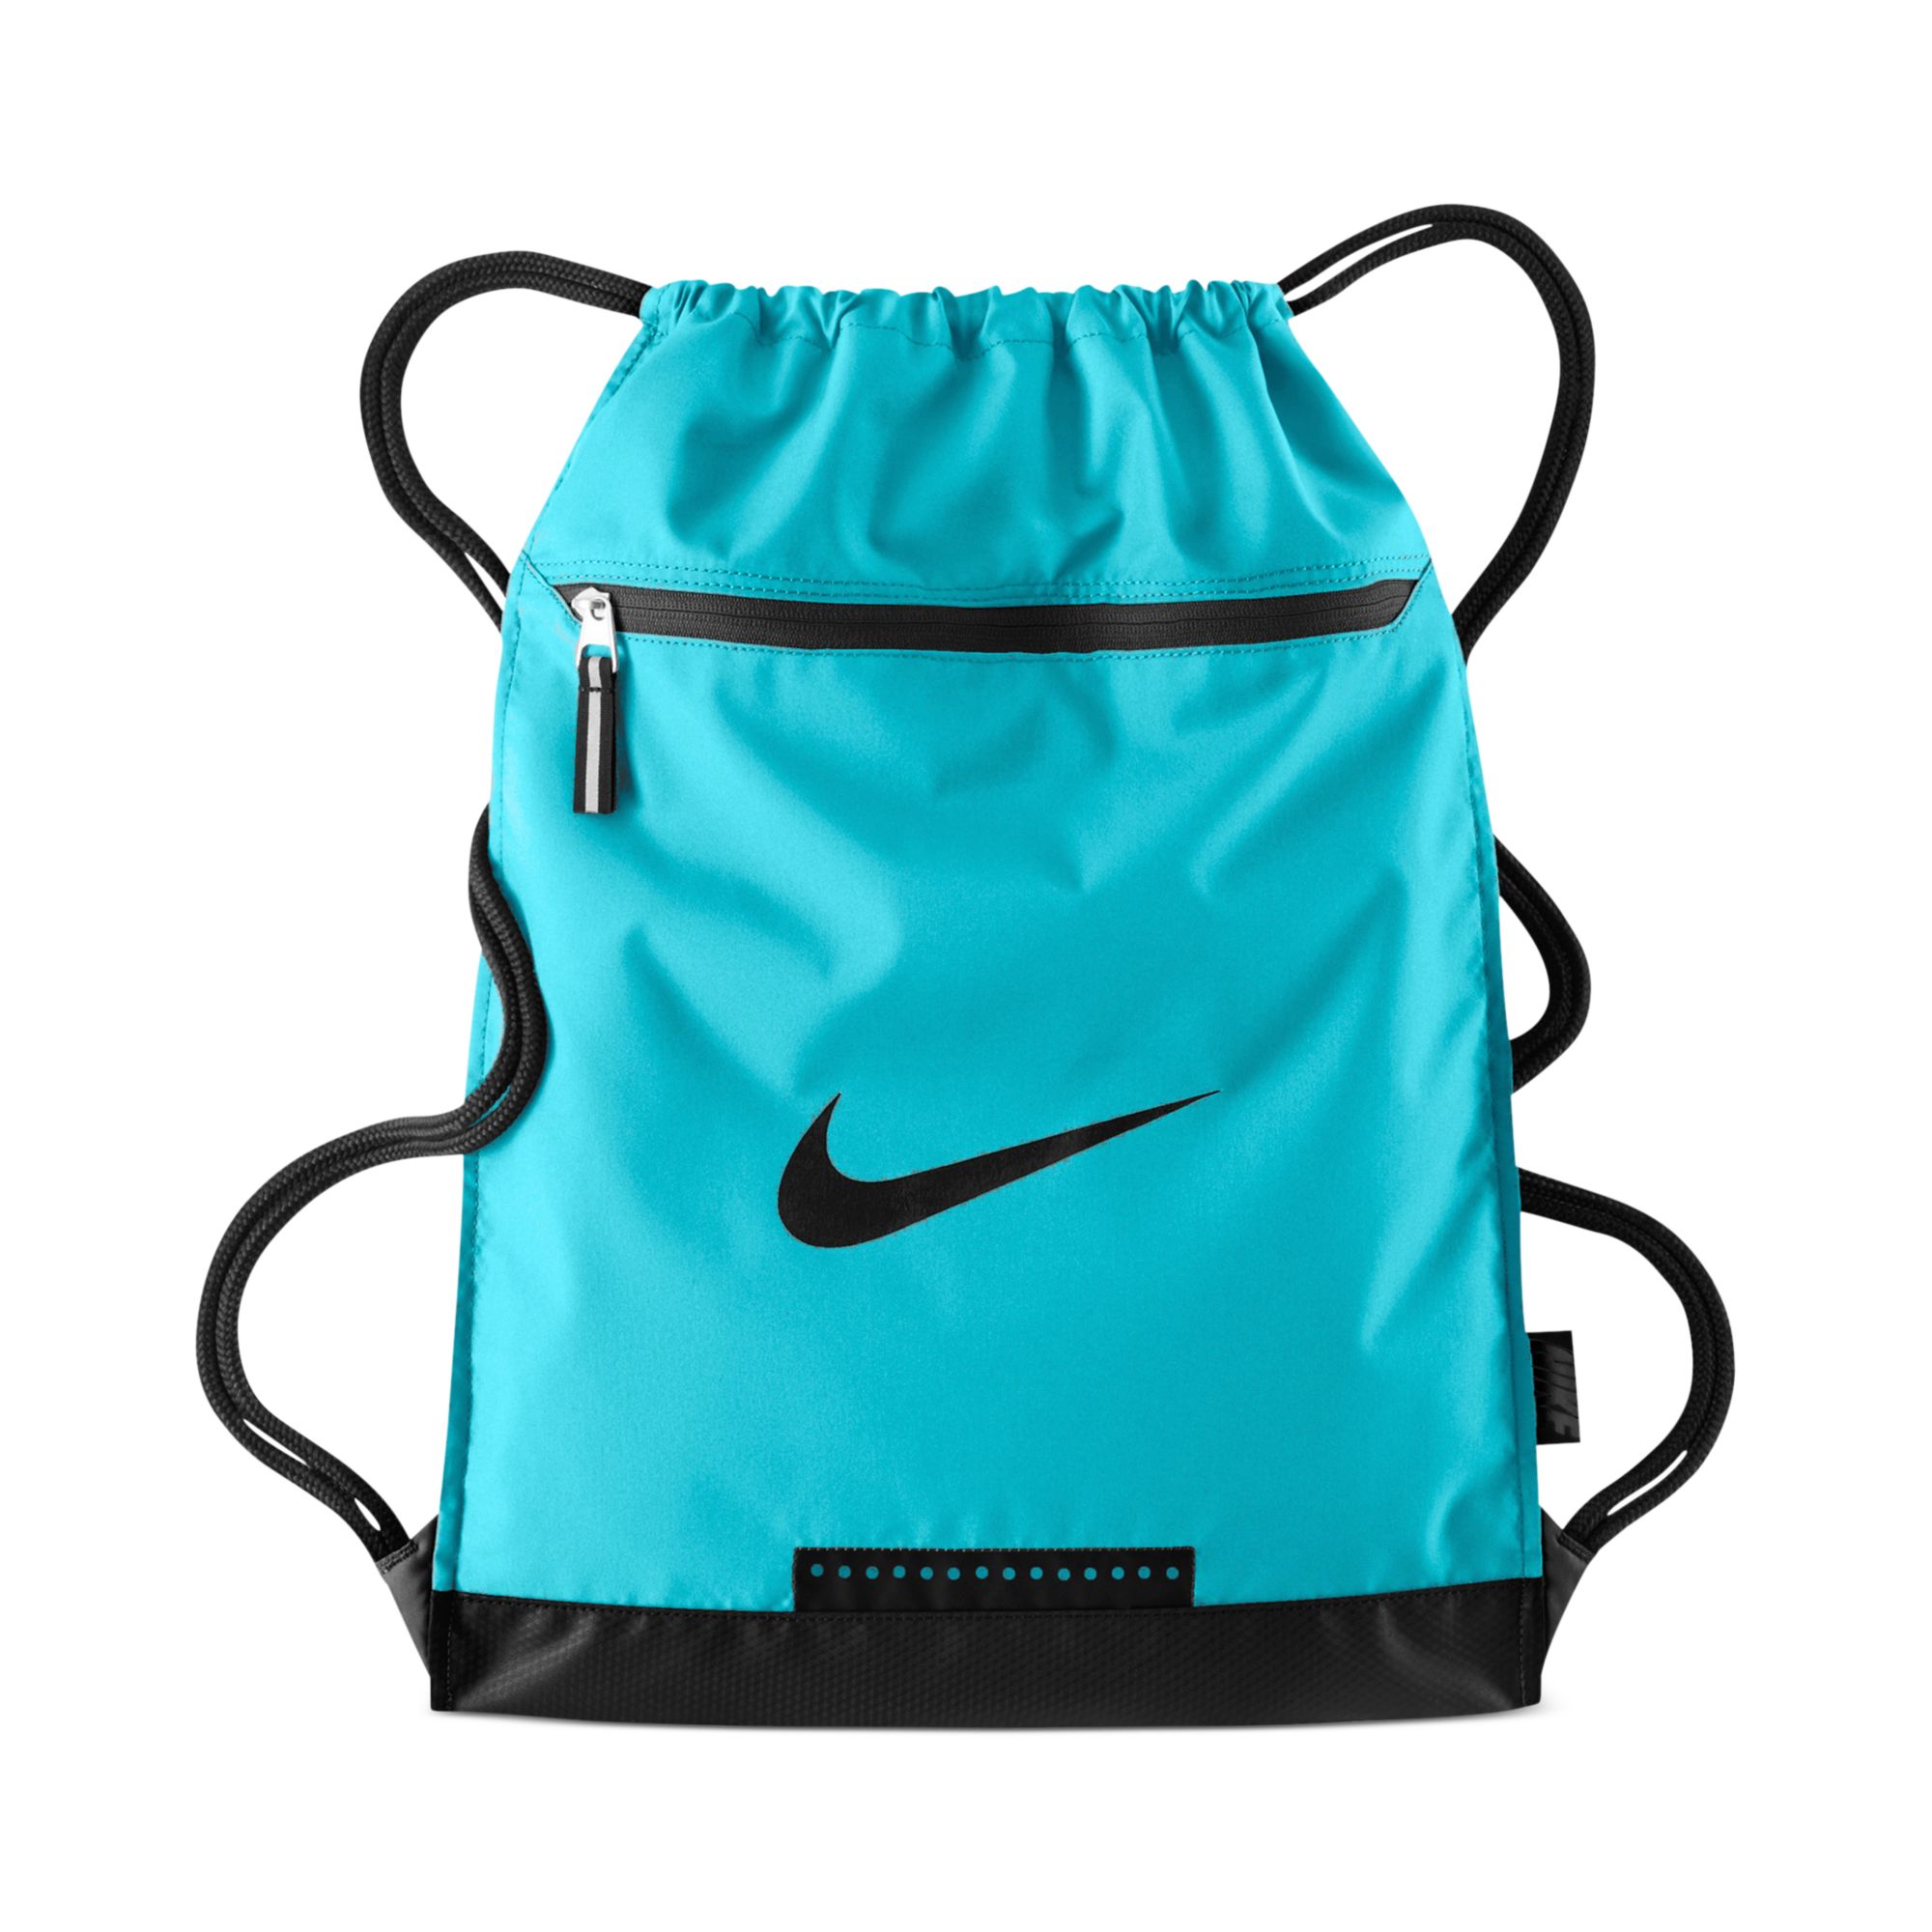 Team Training Gymsack Bag in Blue for |